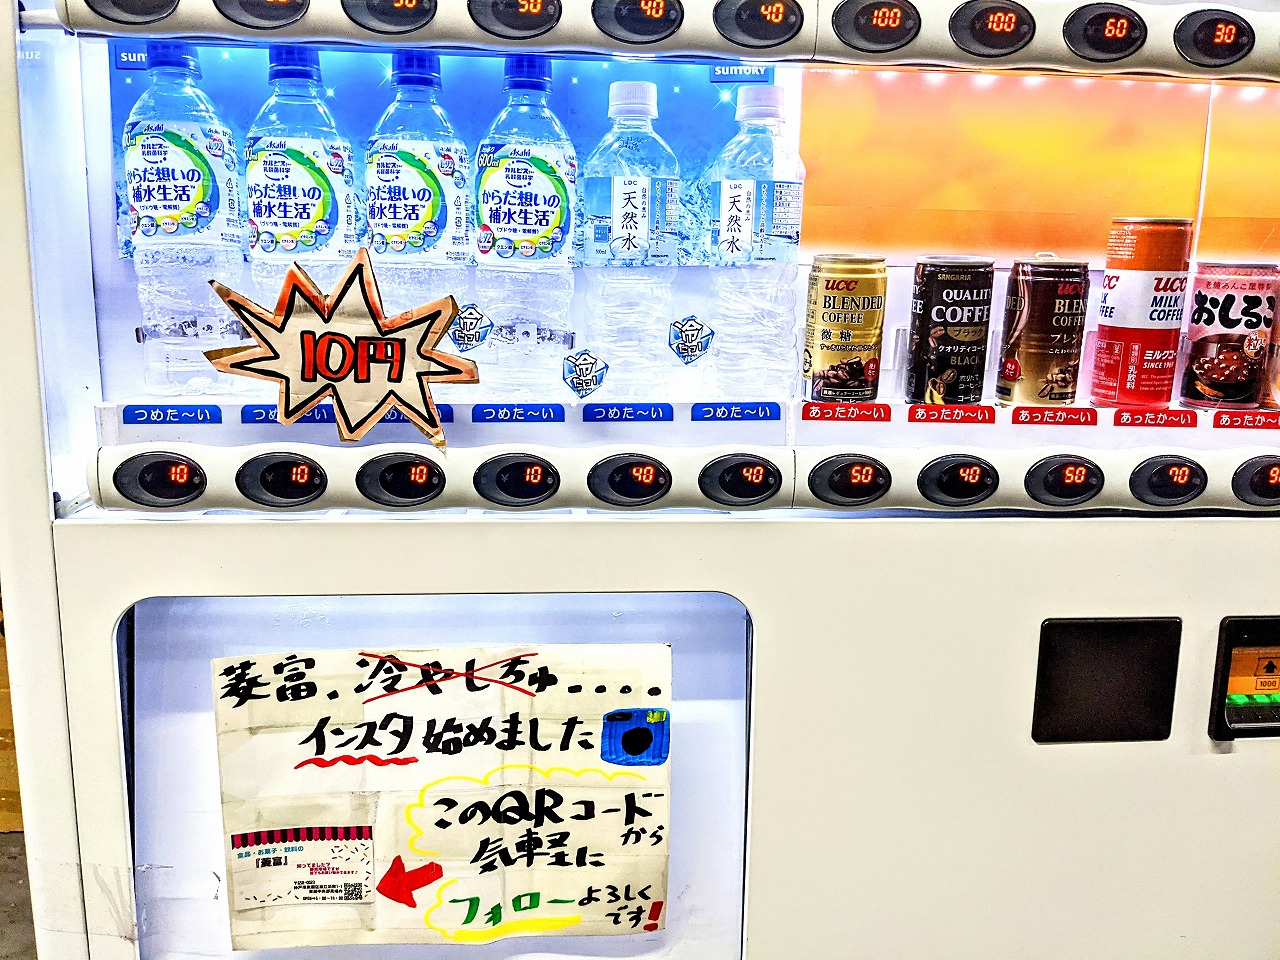 10円自販機